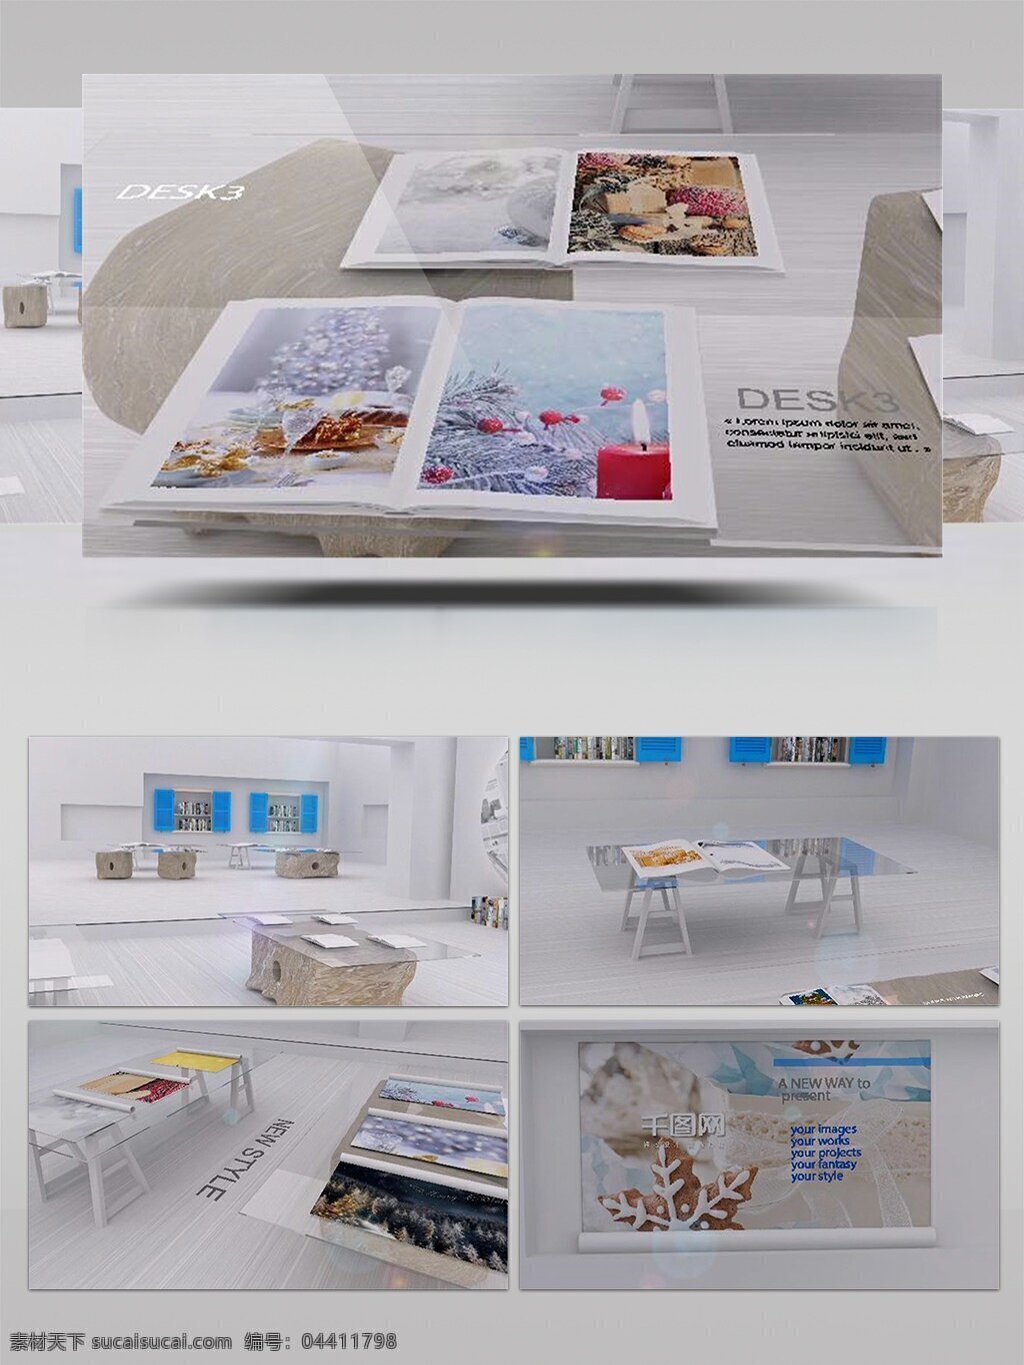 卡通 版 台 走廊 宣传画册 ae 模板 展示 宣传 产品 图像 实景